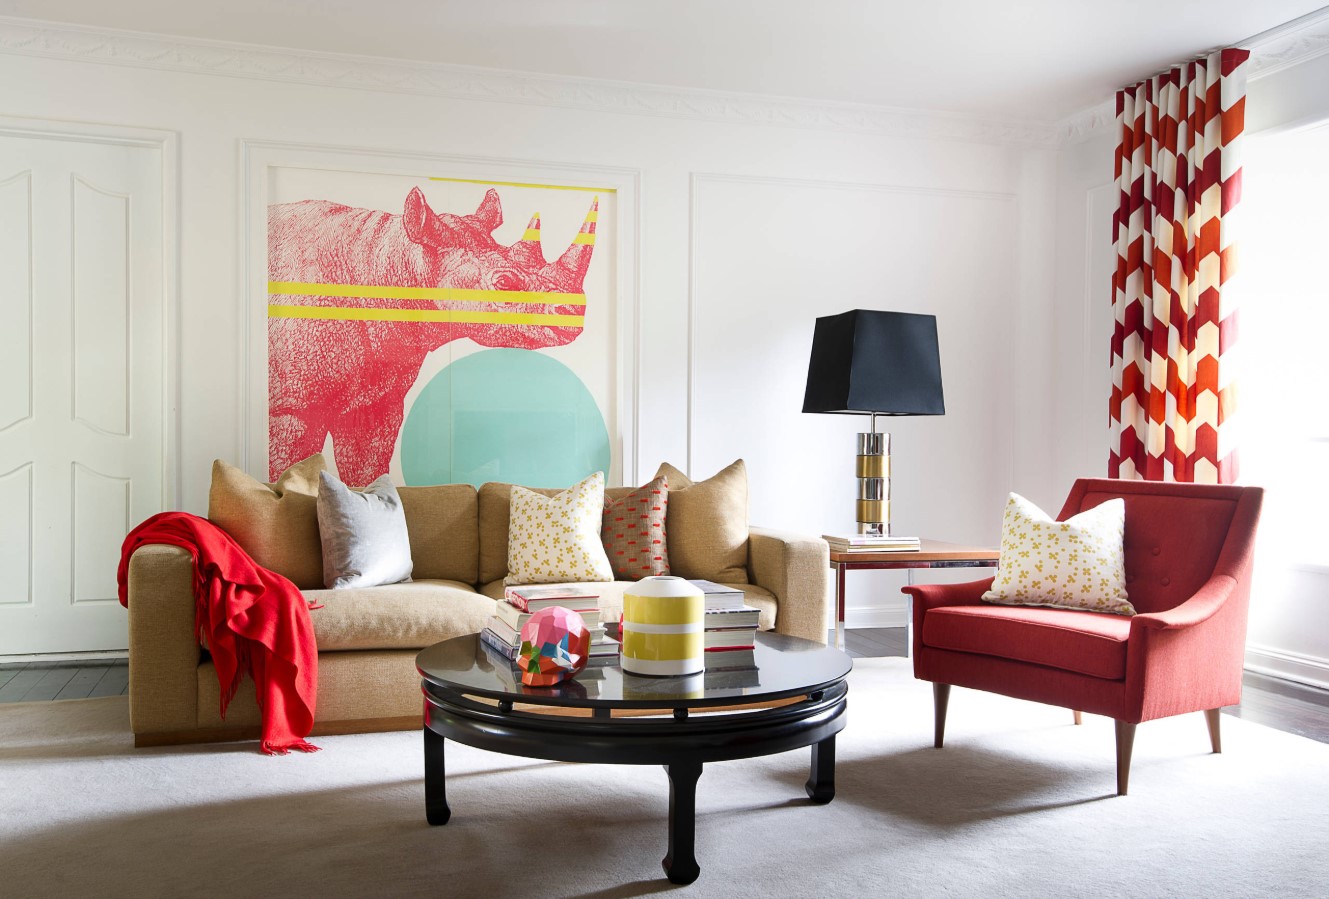 Элегантный интерьер гостиной в красном цвете